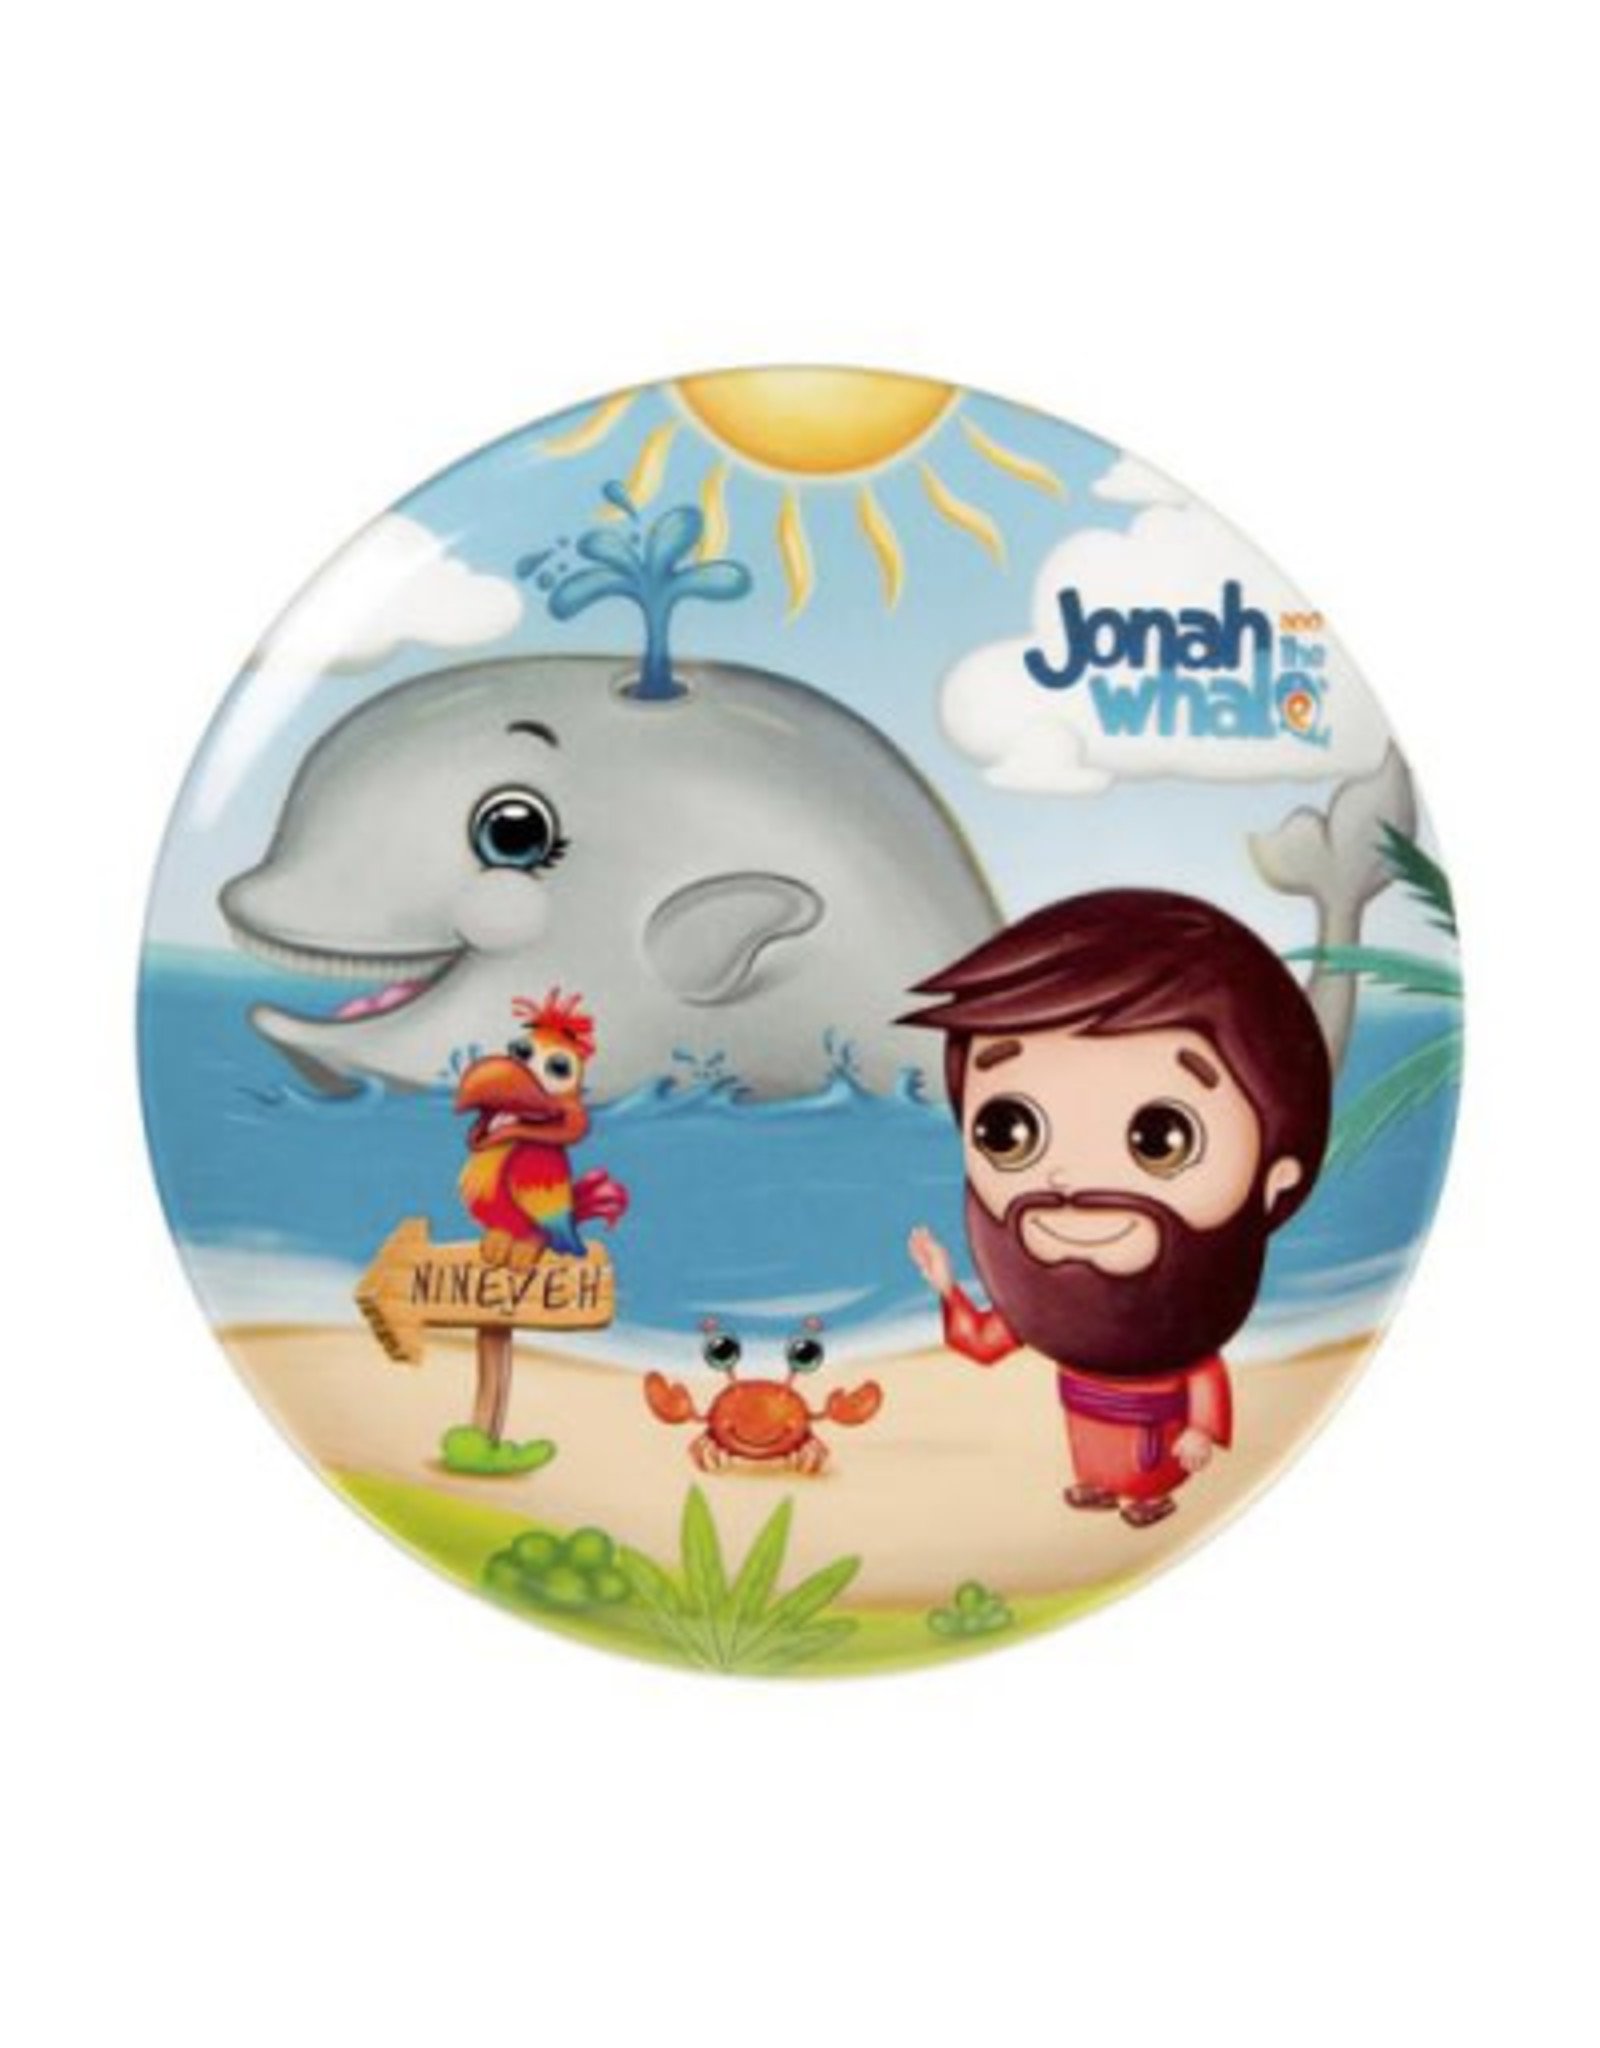 Round Plate - Jonah